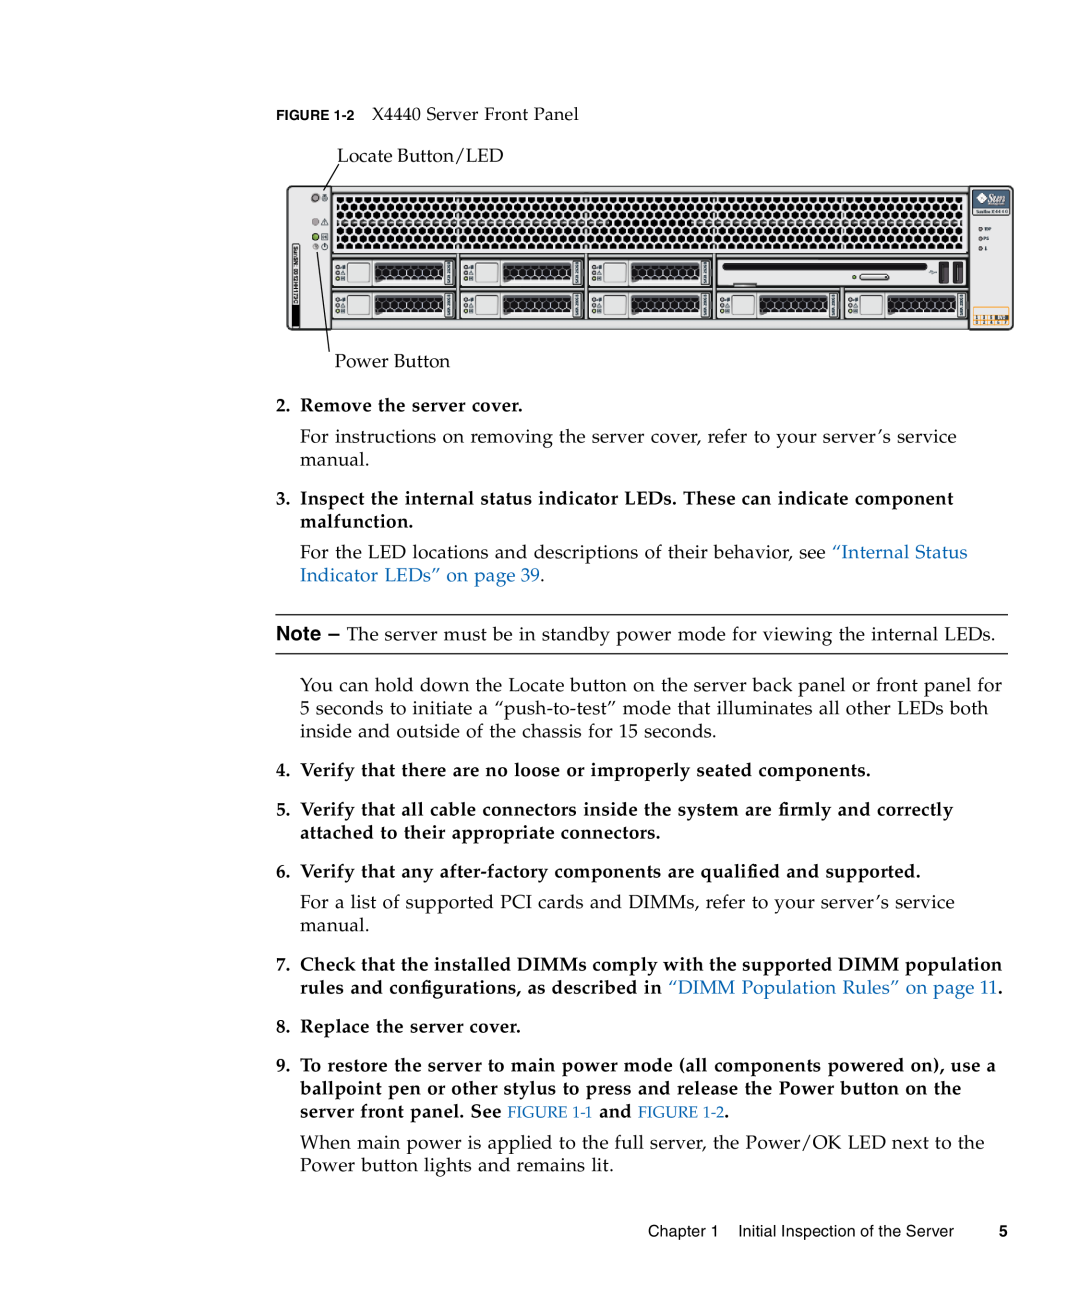 Sun Microsystems X4240, X4440, X4140 manual Remove the server cover 